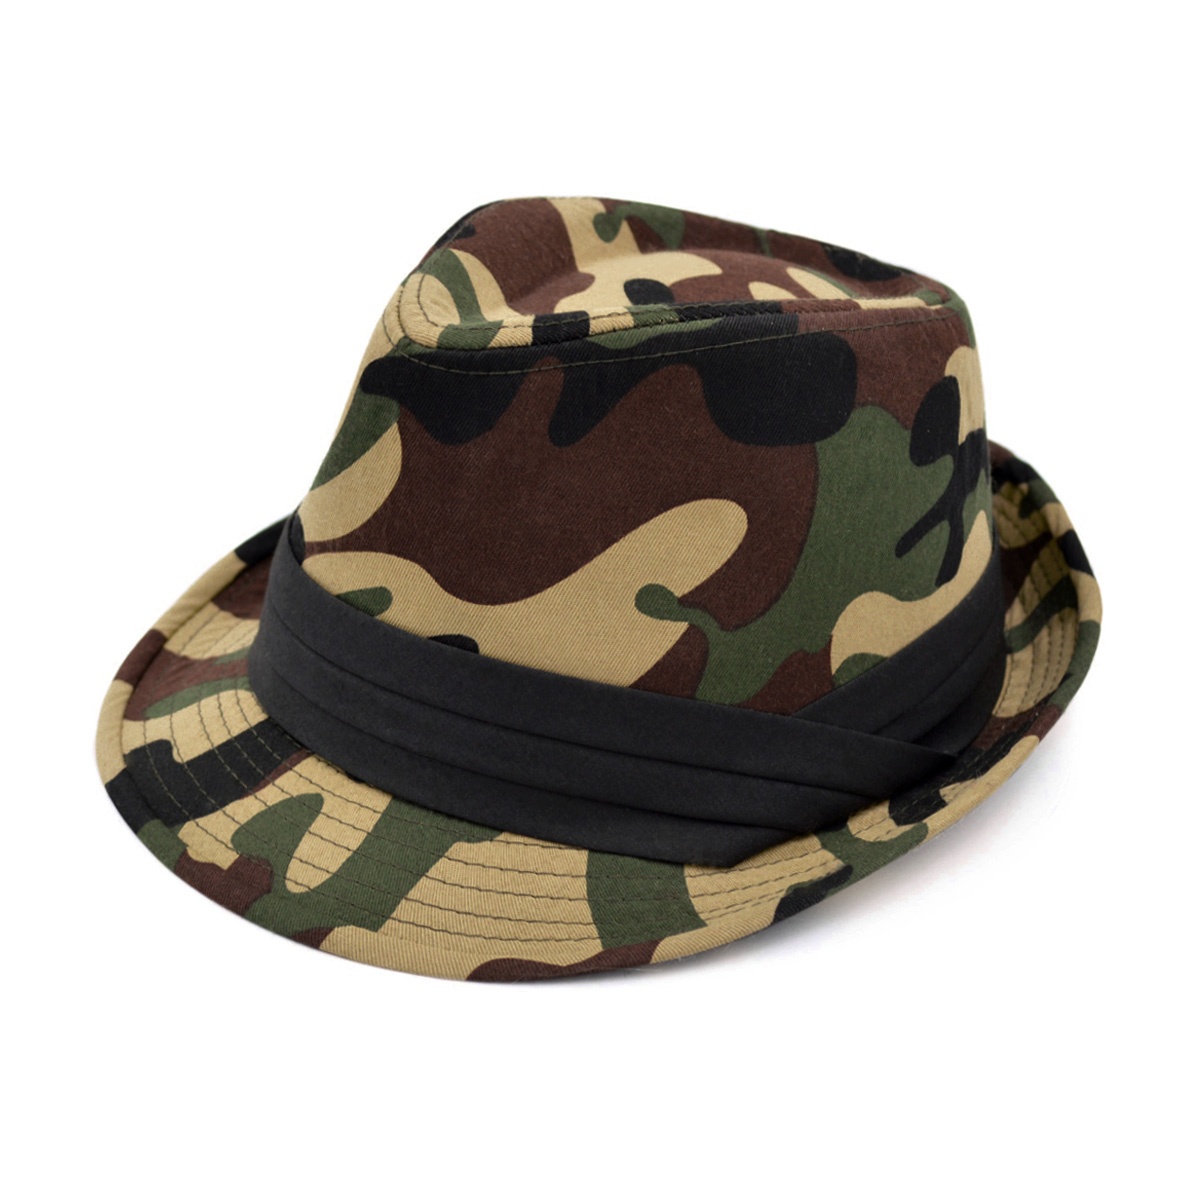 Premium Unisex Camouflage Black Band Fedora Hat - image 1 of 4